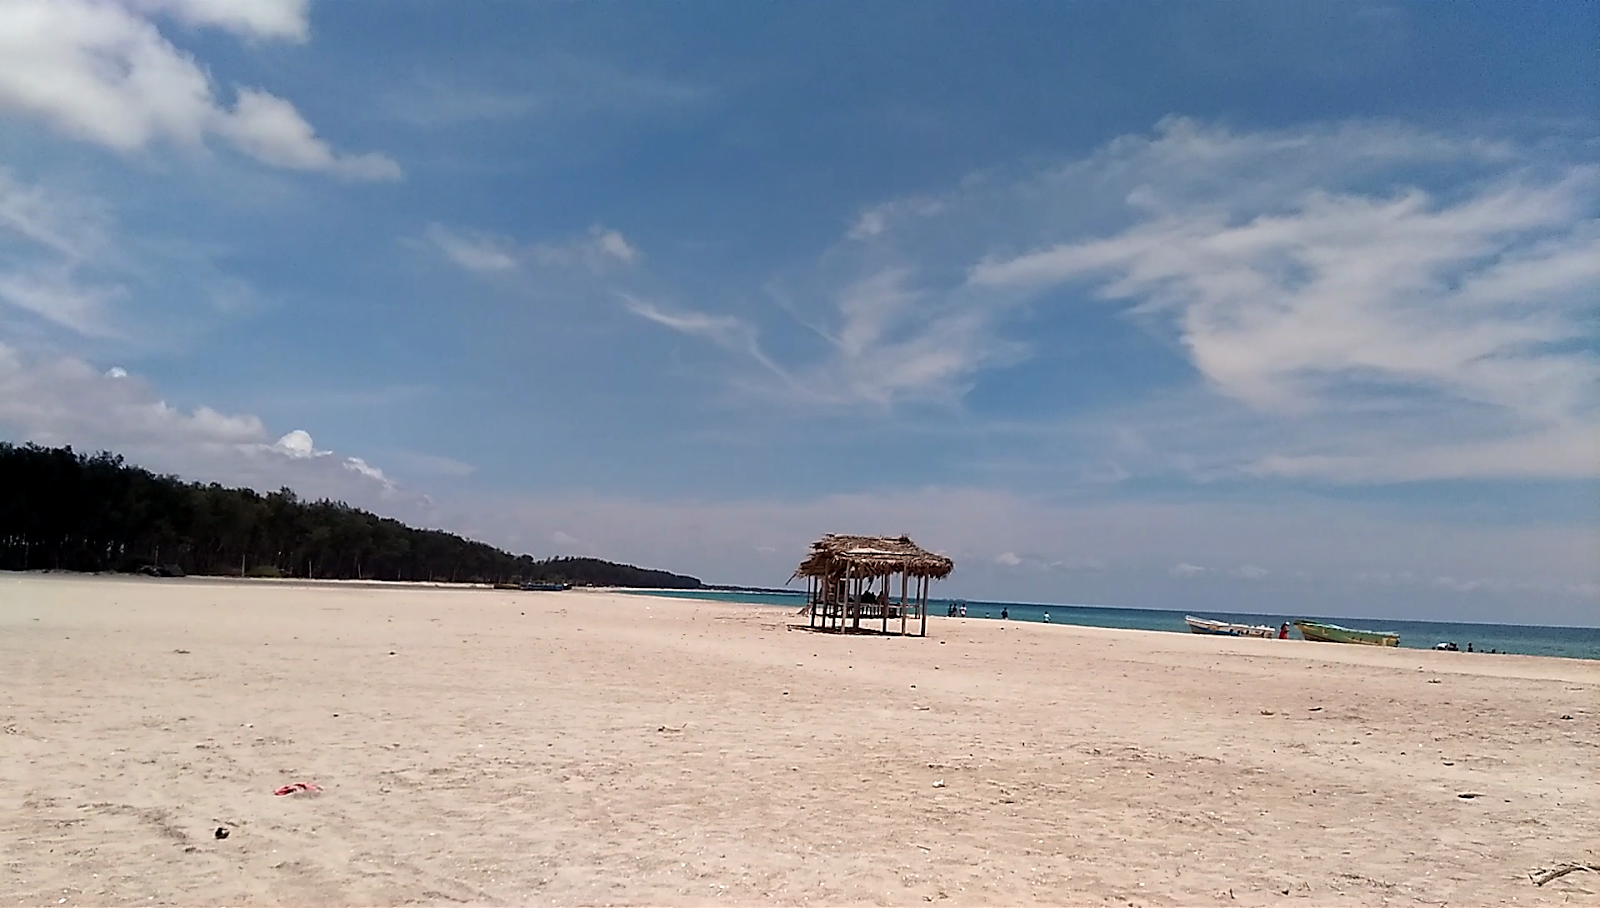 Fotografie cu Ariyamaan Beach - locul popular printre cunoscătorii de relaxare